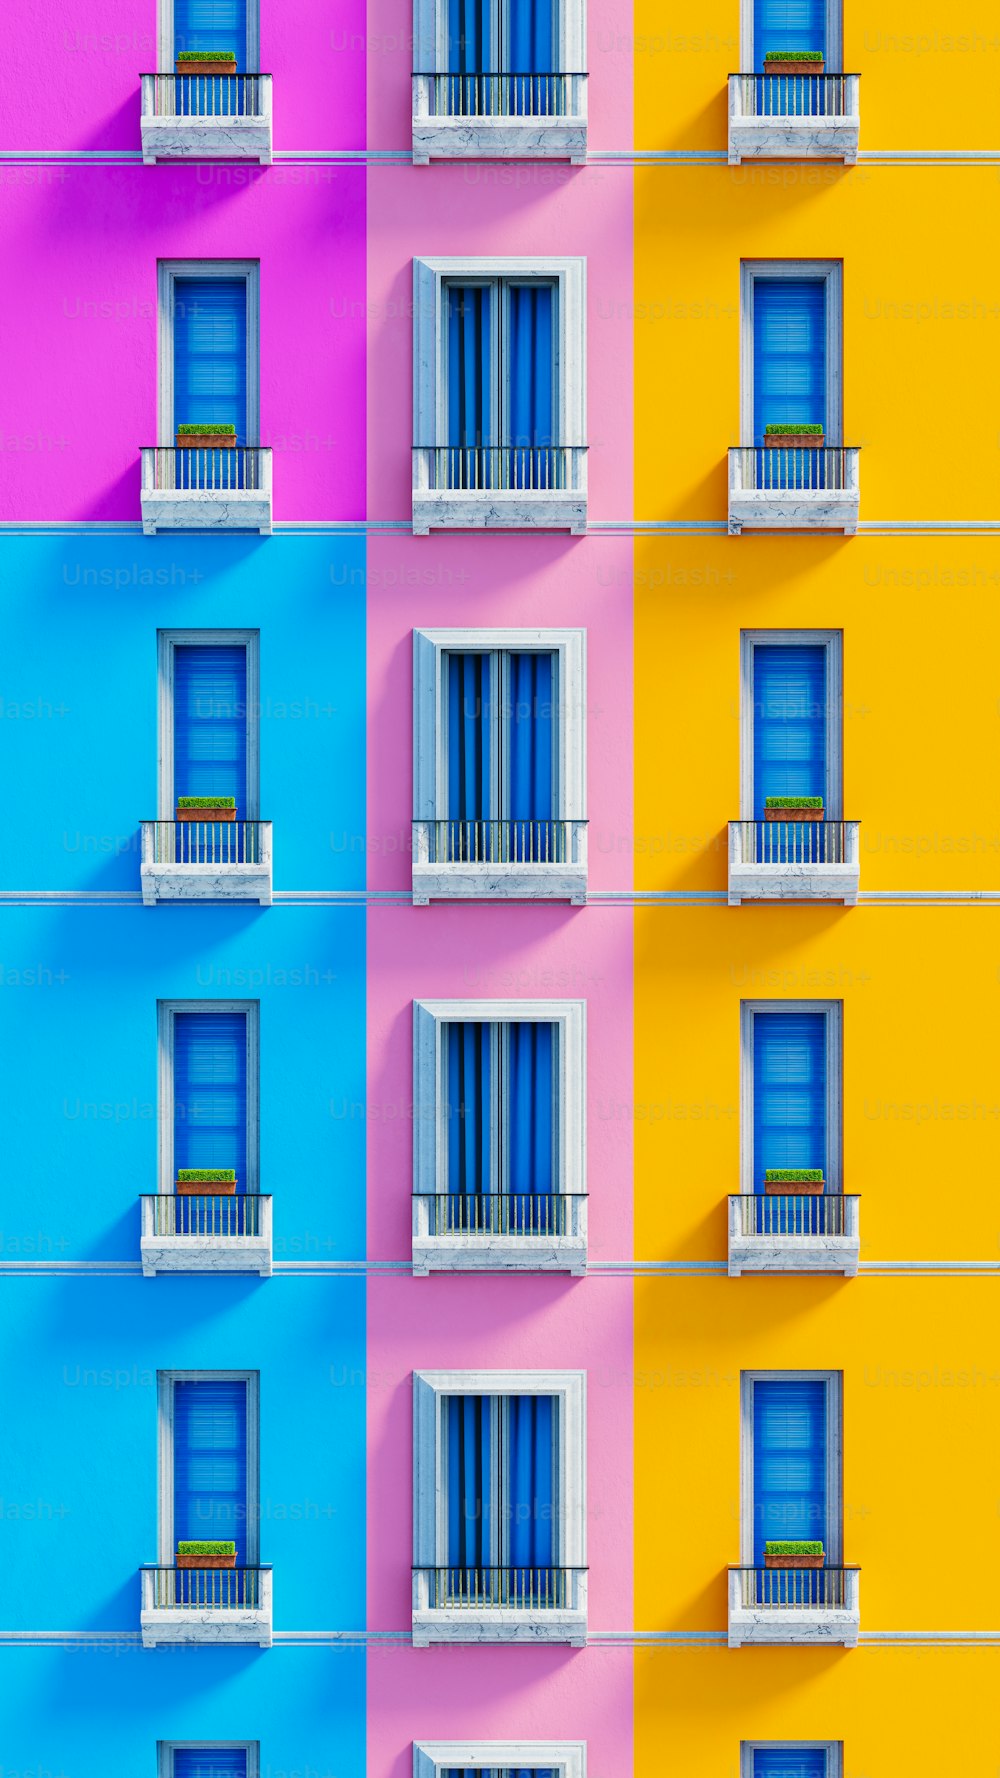 창문과 발코니가 있는 여러 가지 빛깔의 건물